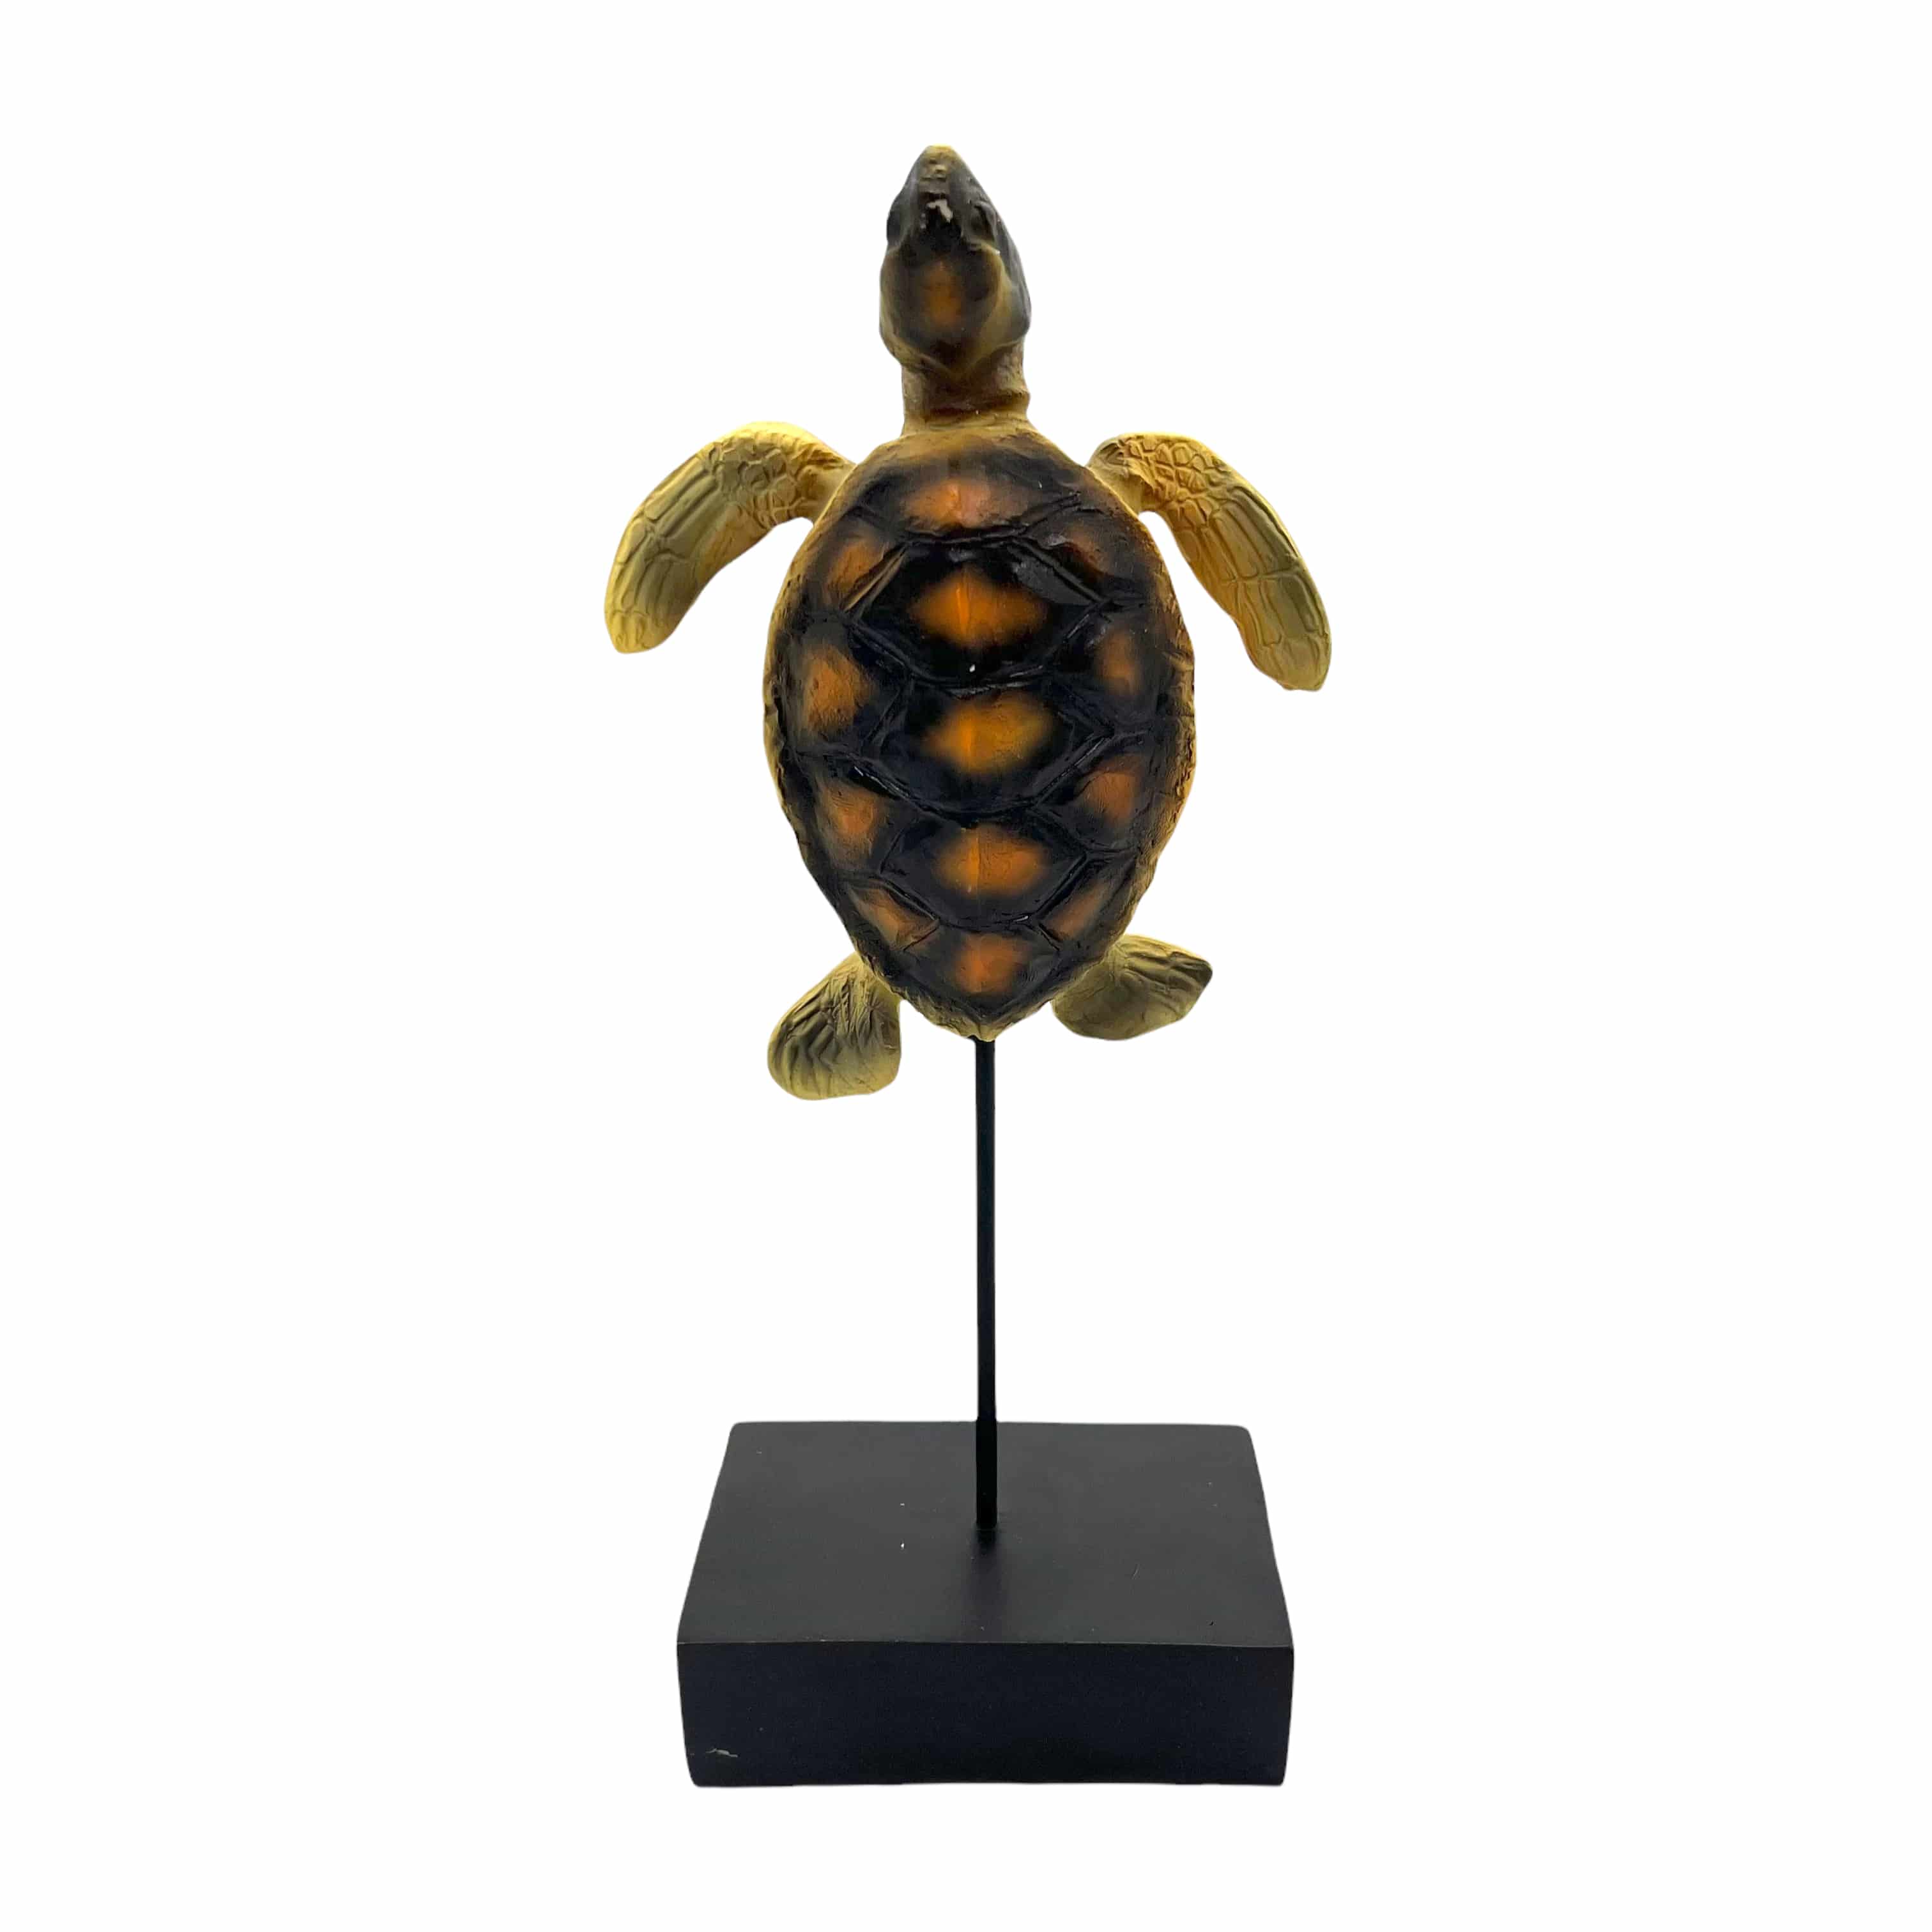 Schildkröte auf Standfuß